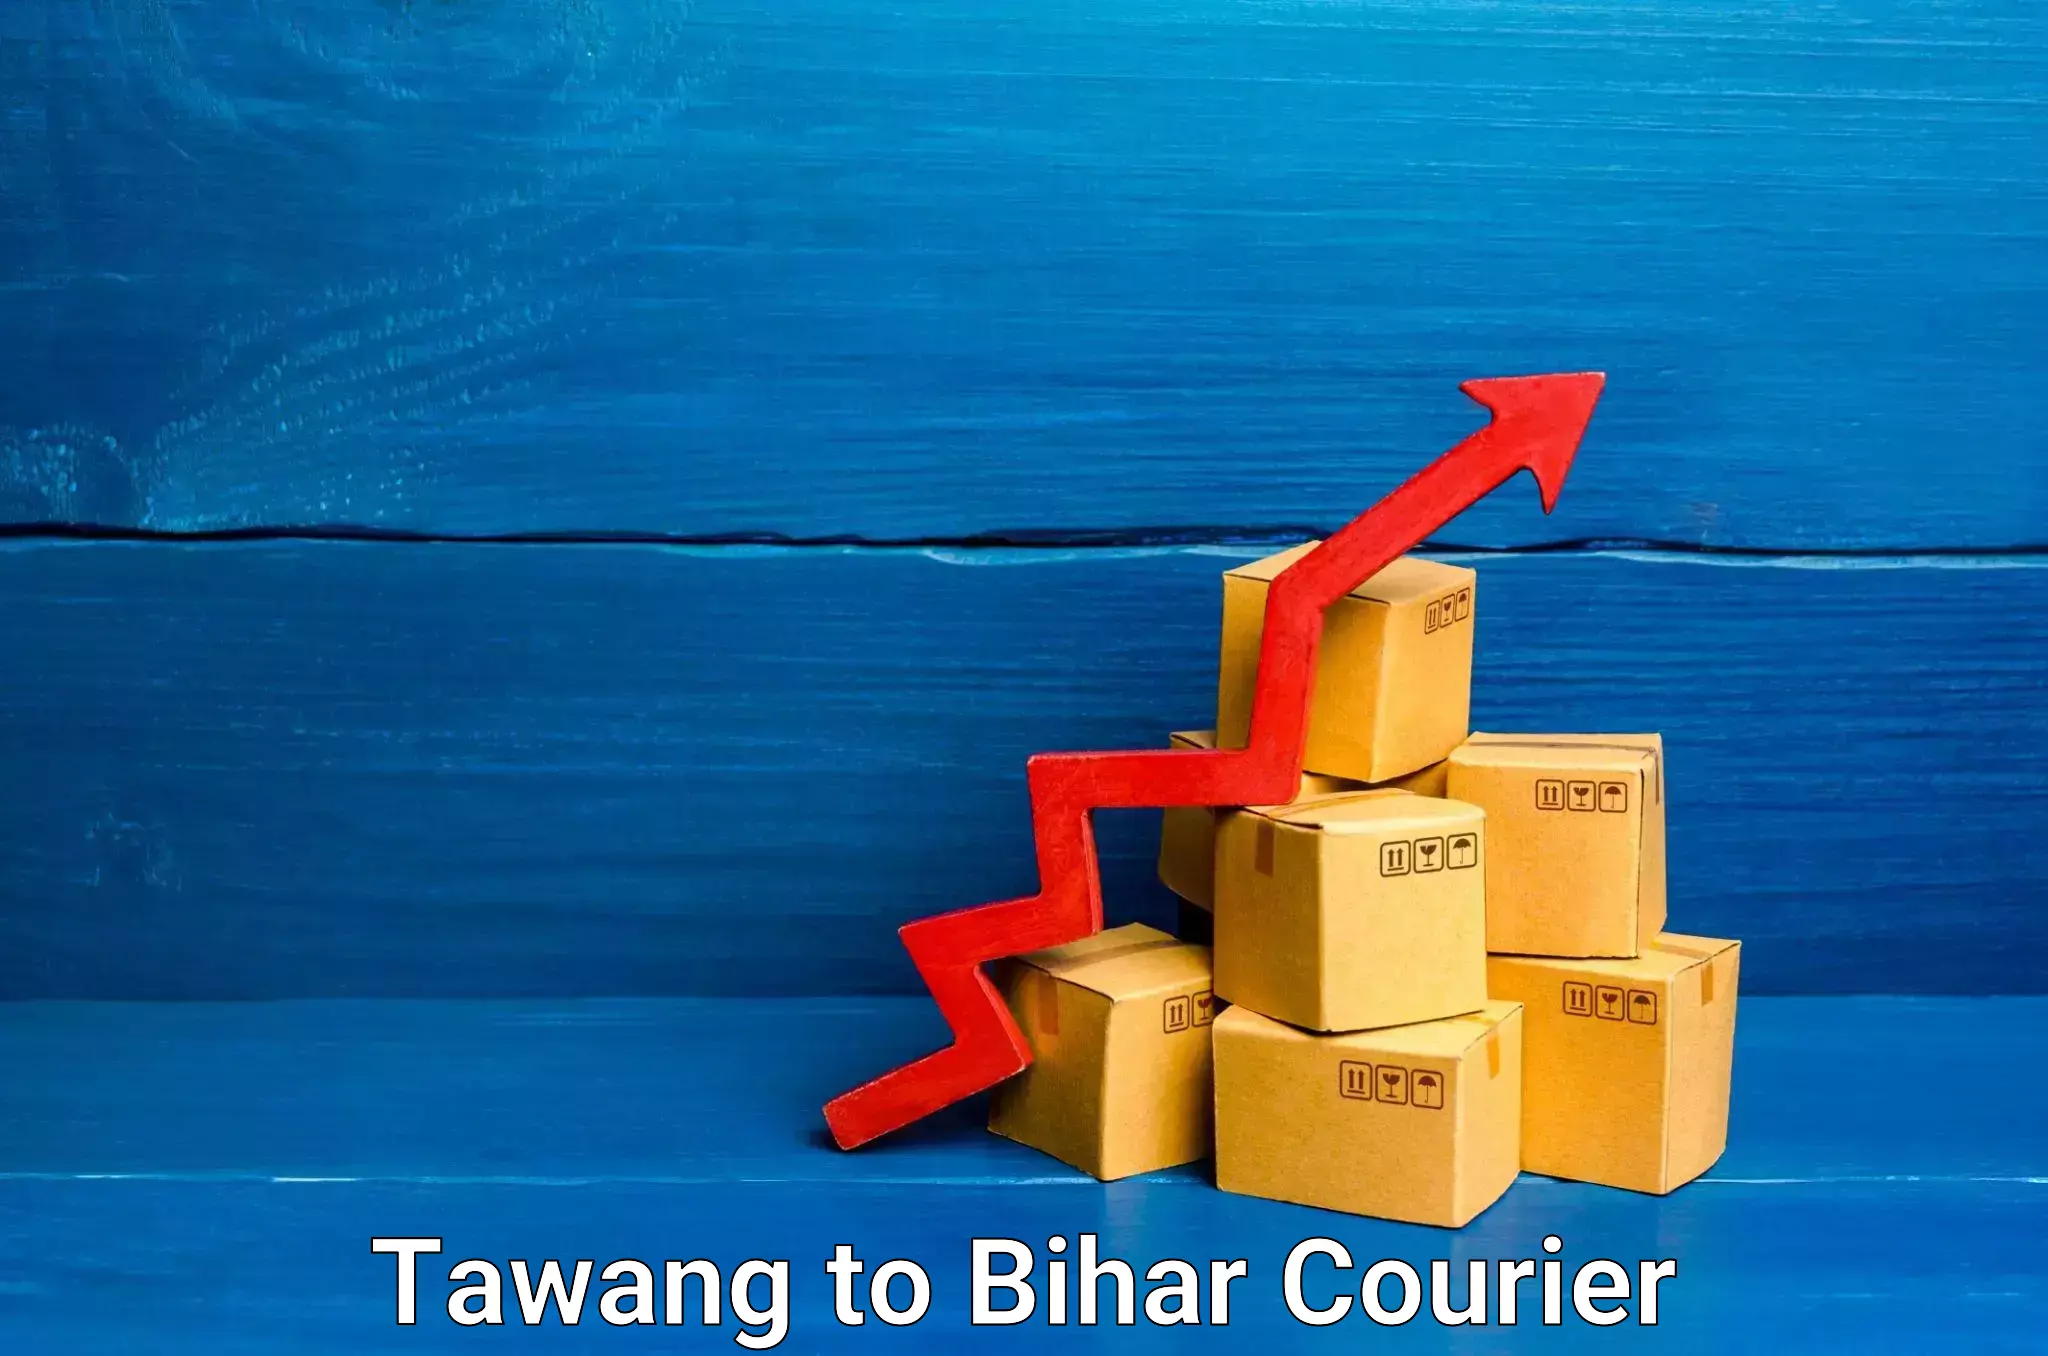 Package delivery network Tawang to Daudnagar